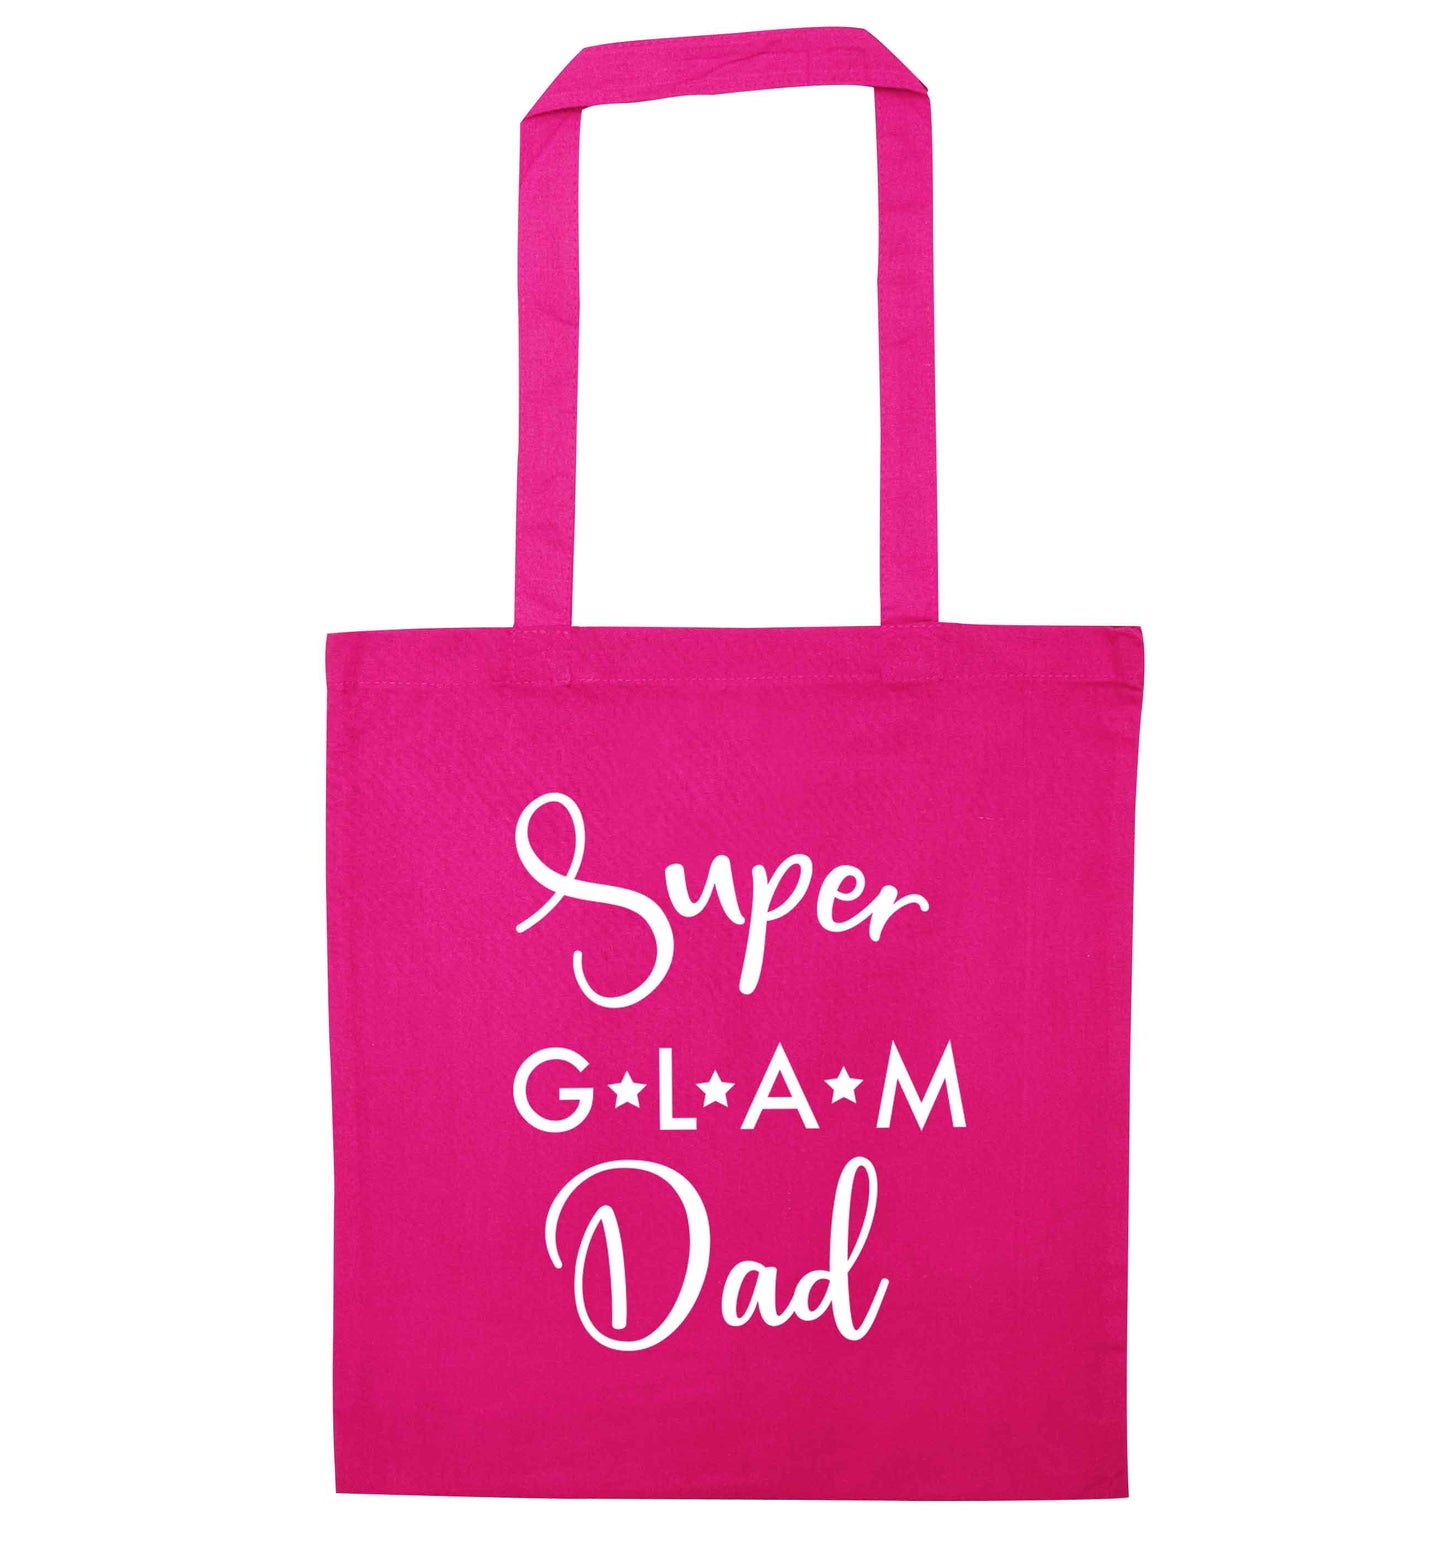 Super glam Dad pink tote bag